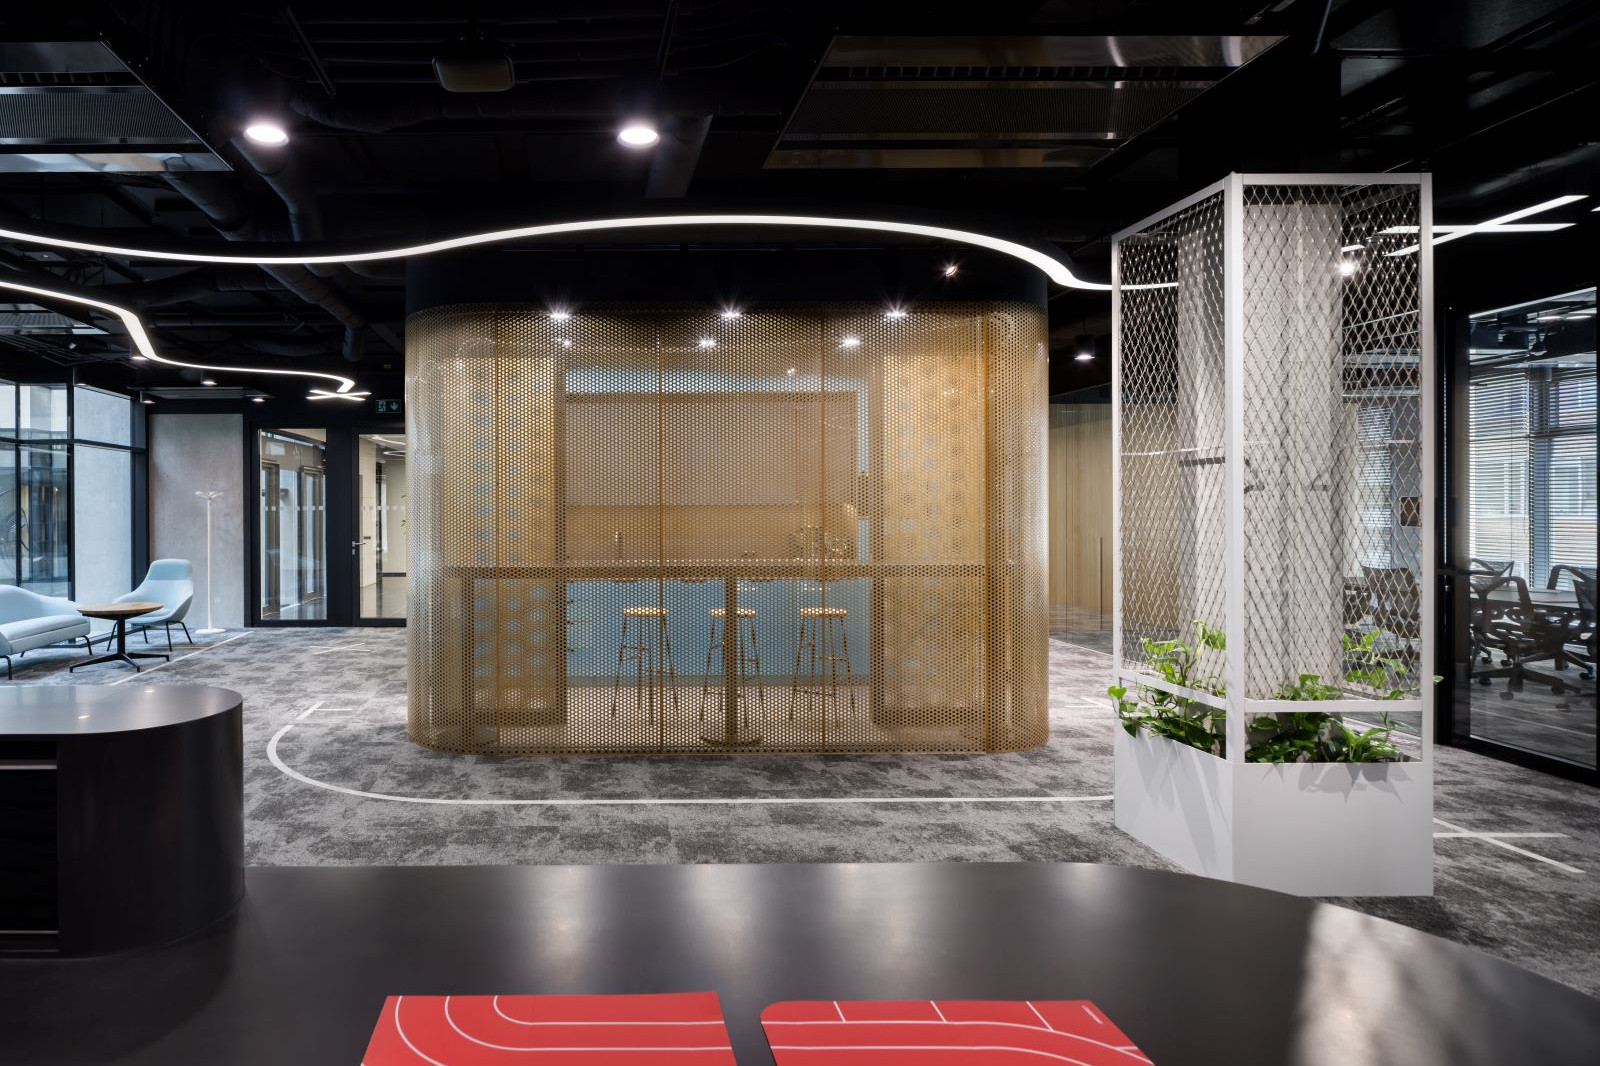 Nové kanceláře společnosti Livesport  jsou univerzální tělocvična s náčiním pro práci